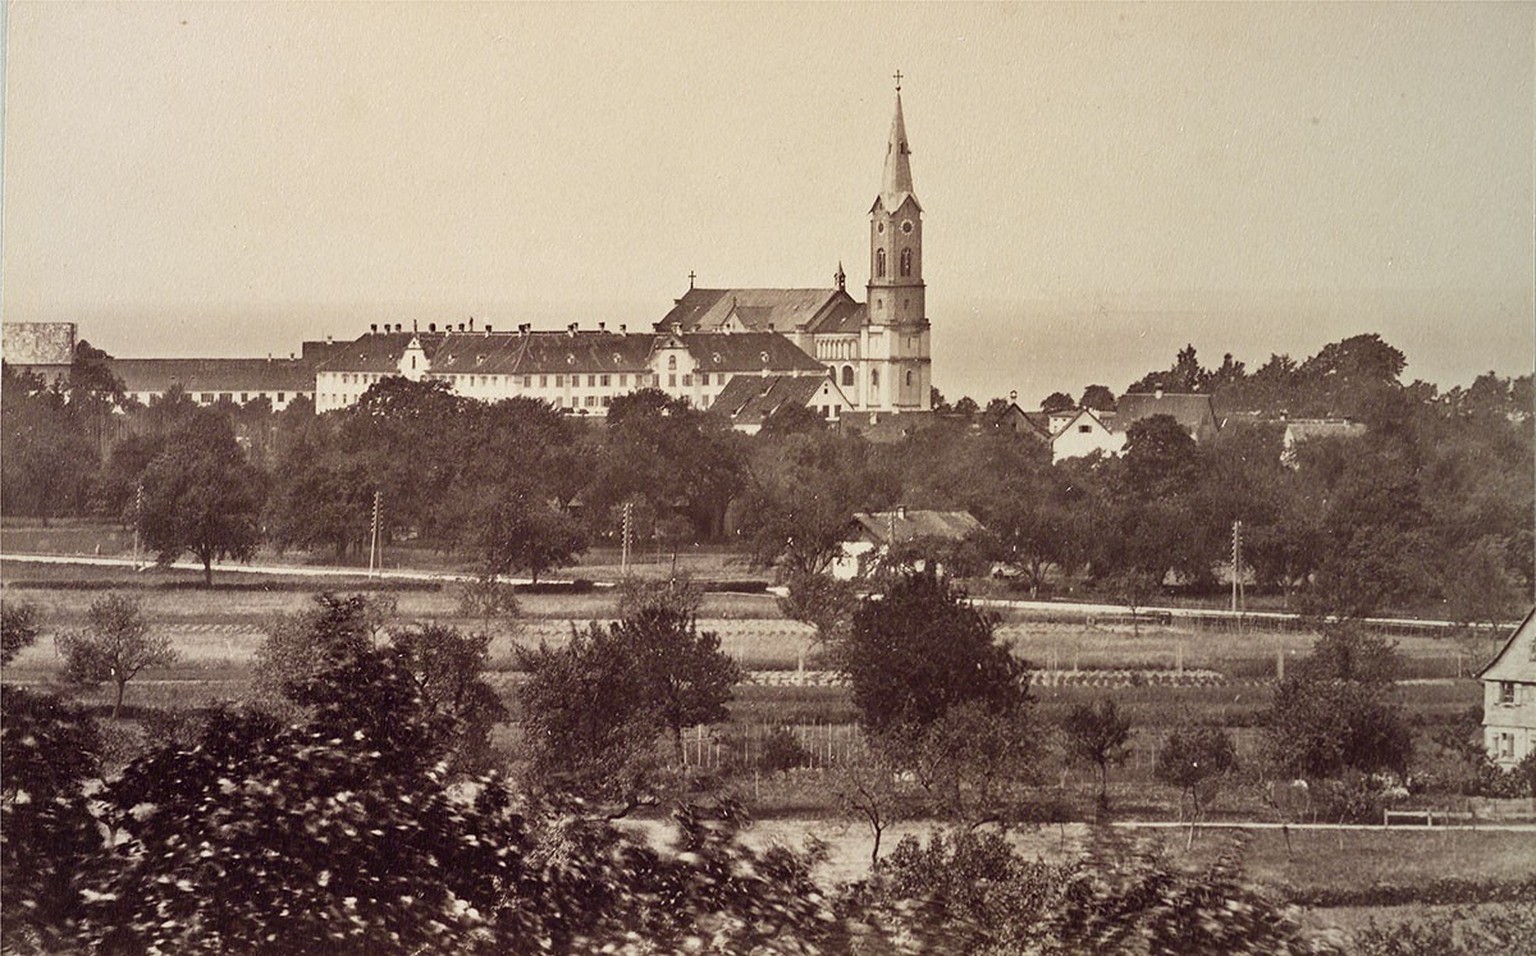 Die letzte Wirkungsstätte Zwyssigs: das Kloster Mehrerau bei Bregenz, um 1890.
https://ba.e-pics.ethz.ch/catalog/ETHBIB.Bildarchiv/r/22183/viewmode=infoview